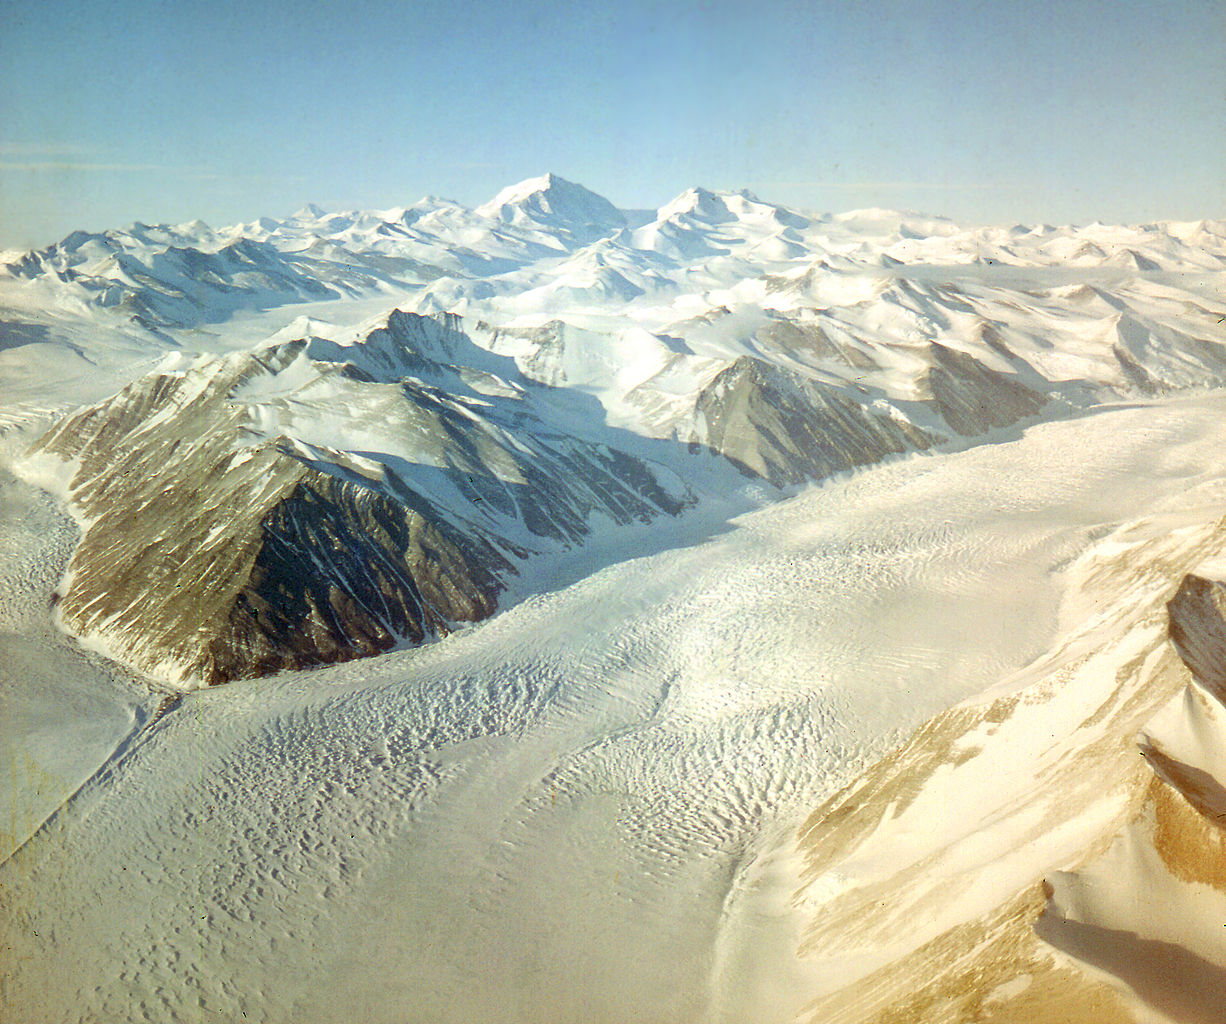 Beardmore Glacier - Antarctica.jpg